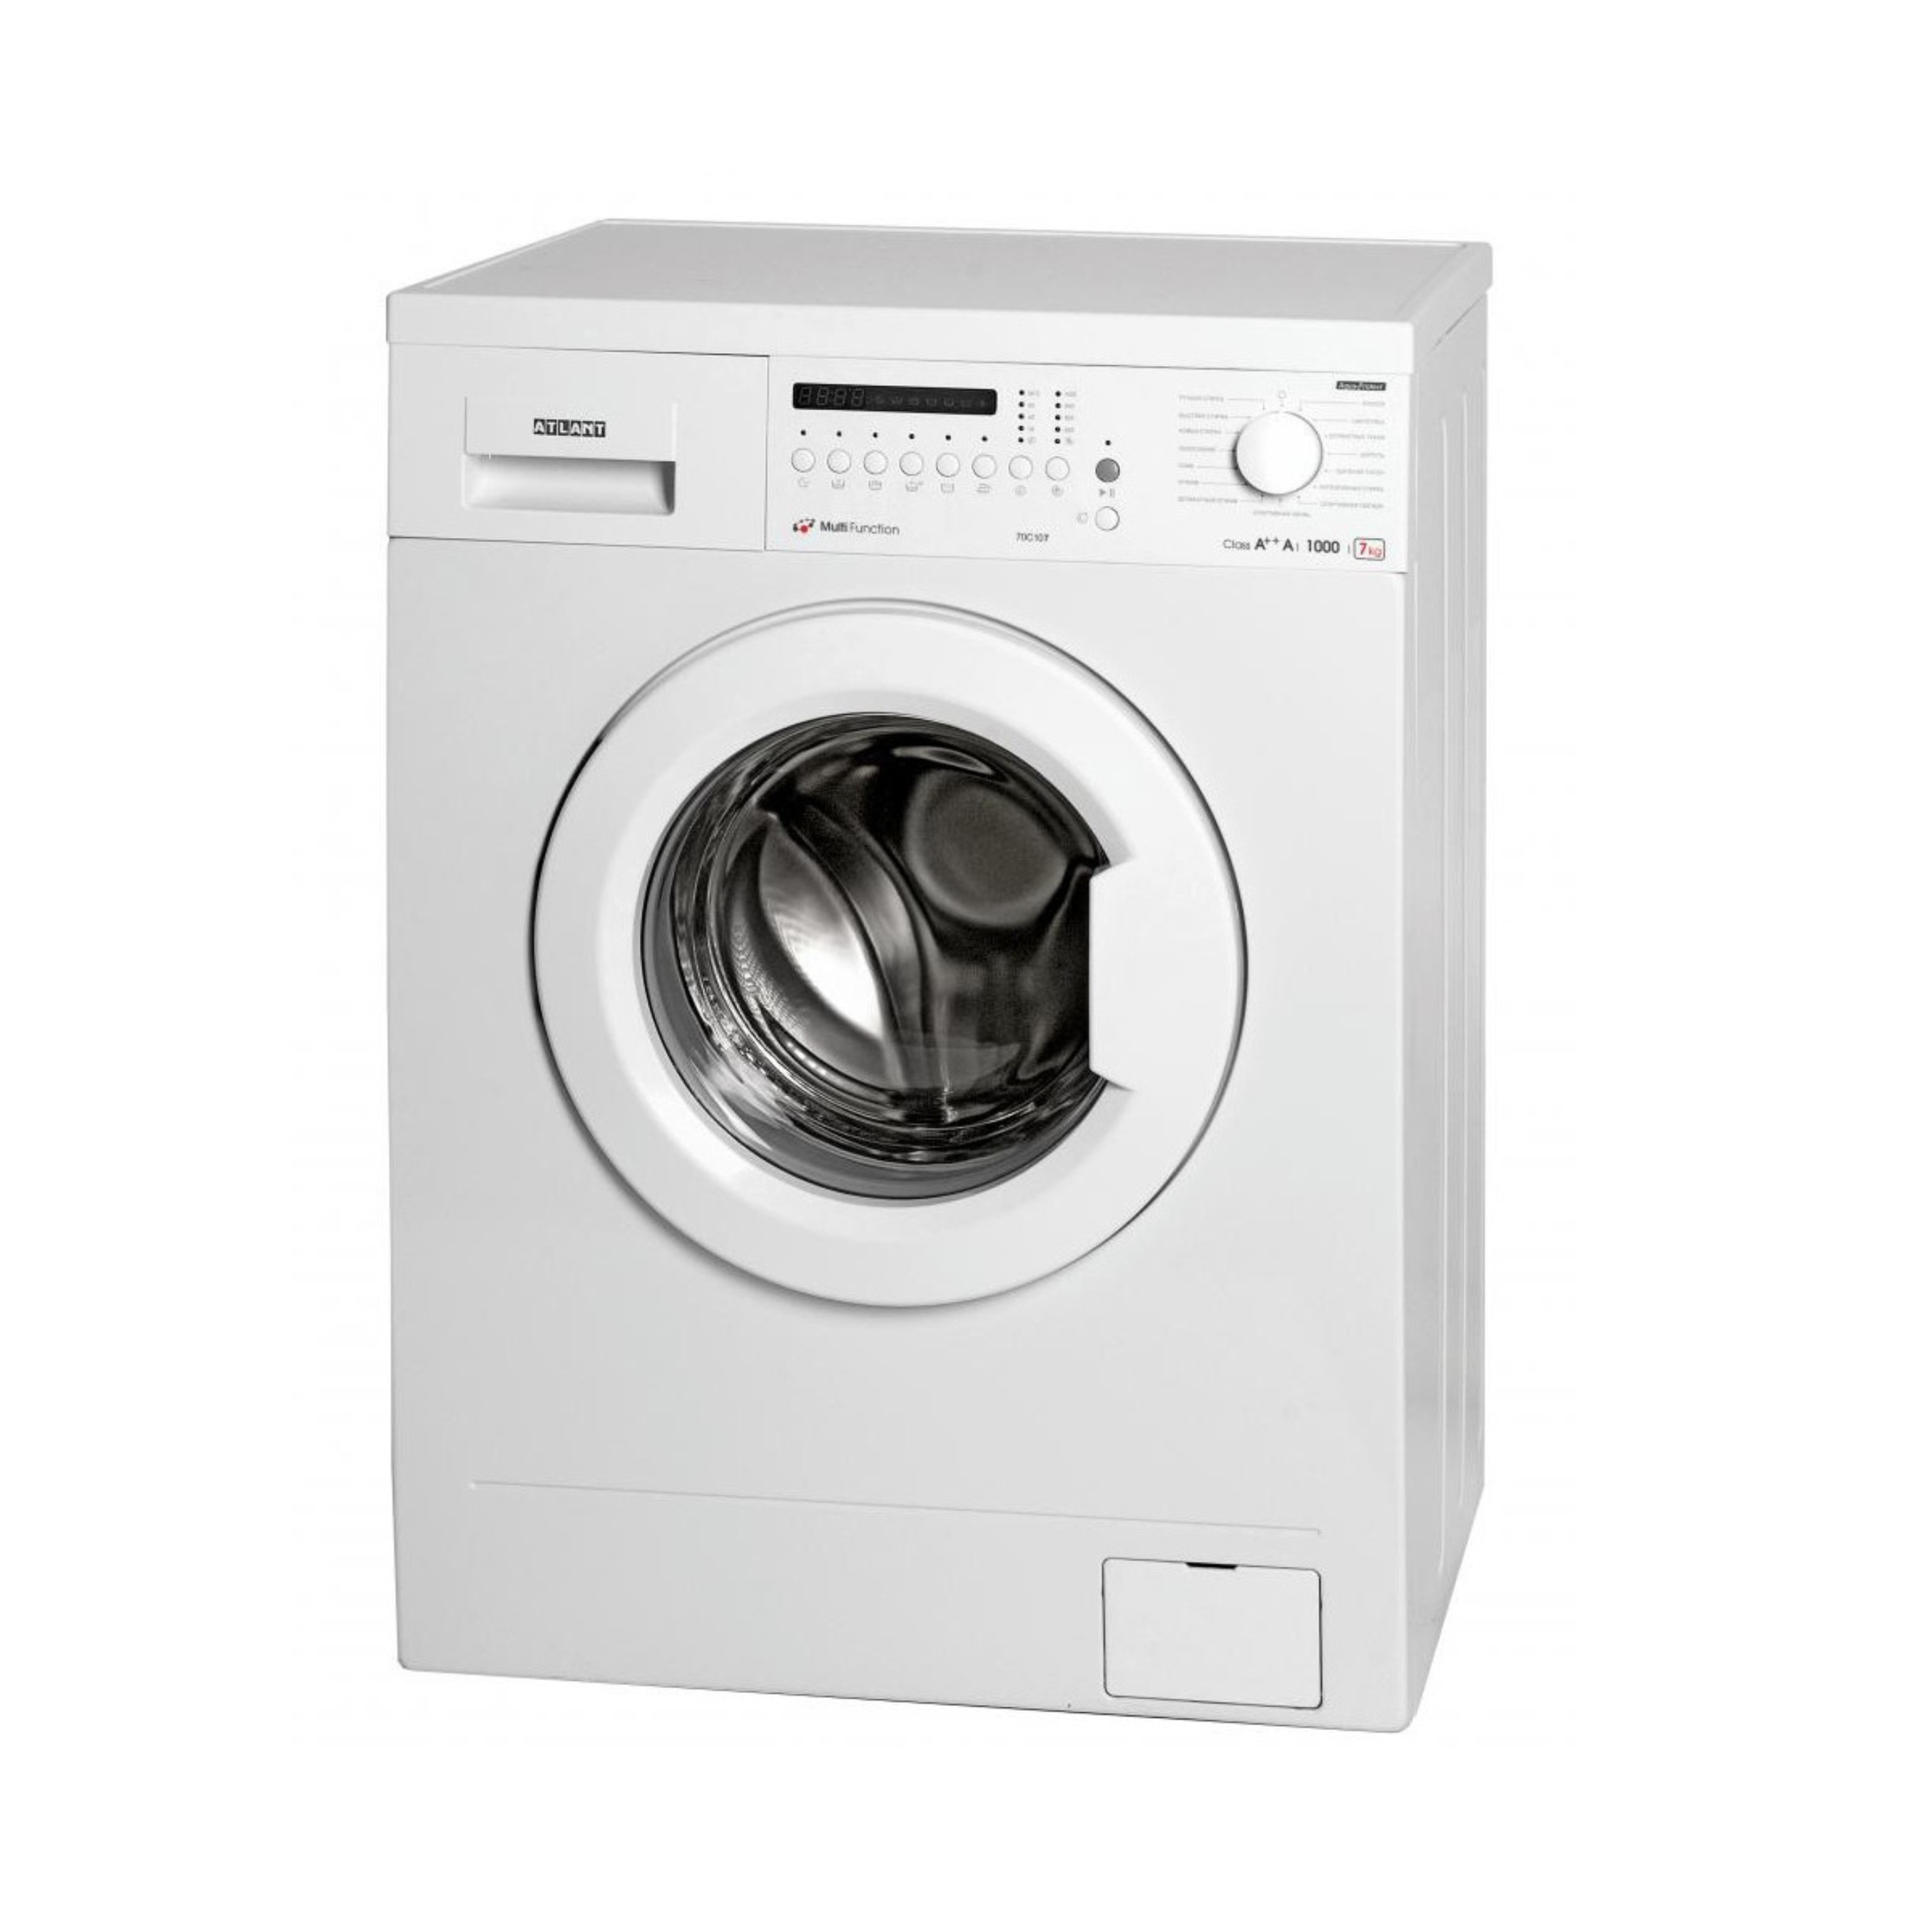 Купить хорошую стиральную машину автомат недорого